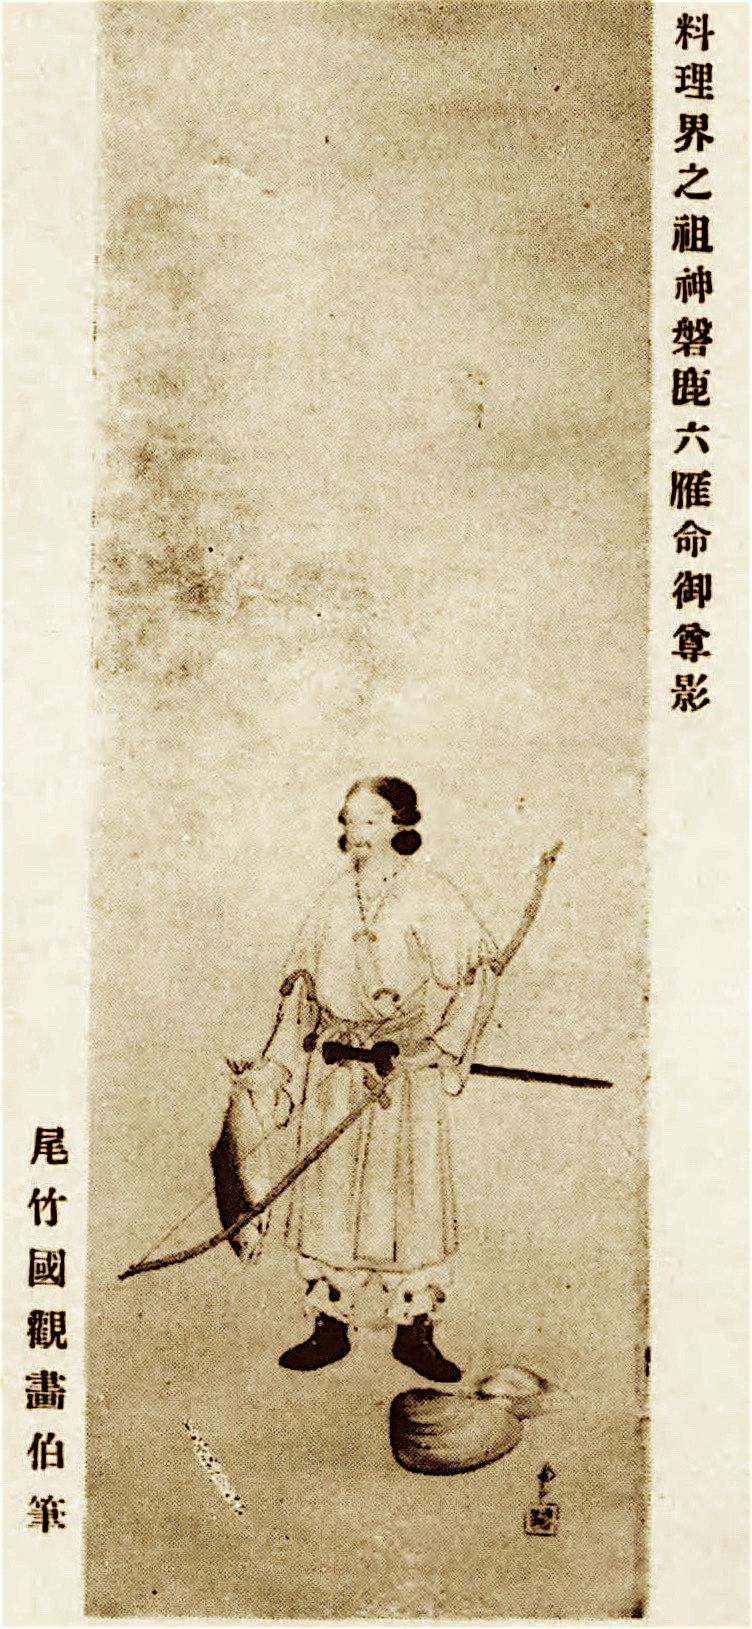 Iwakamutsukari. Les premiers Takahashi qui apparaissent dans les textes sont les descendants de ce personnage. (Avec l'aimable autorisation de la Bibliothèque nationale de la Diète)